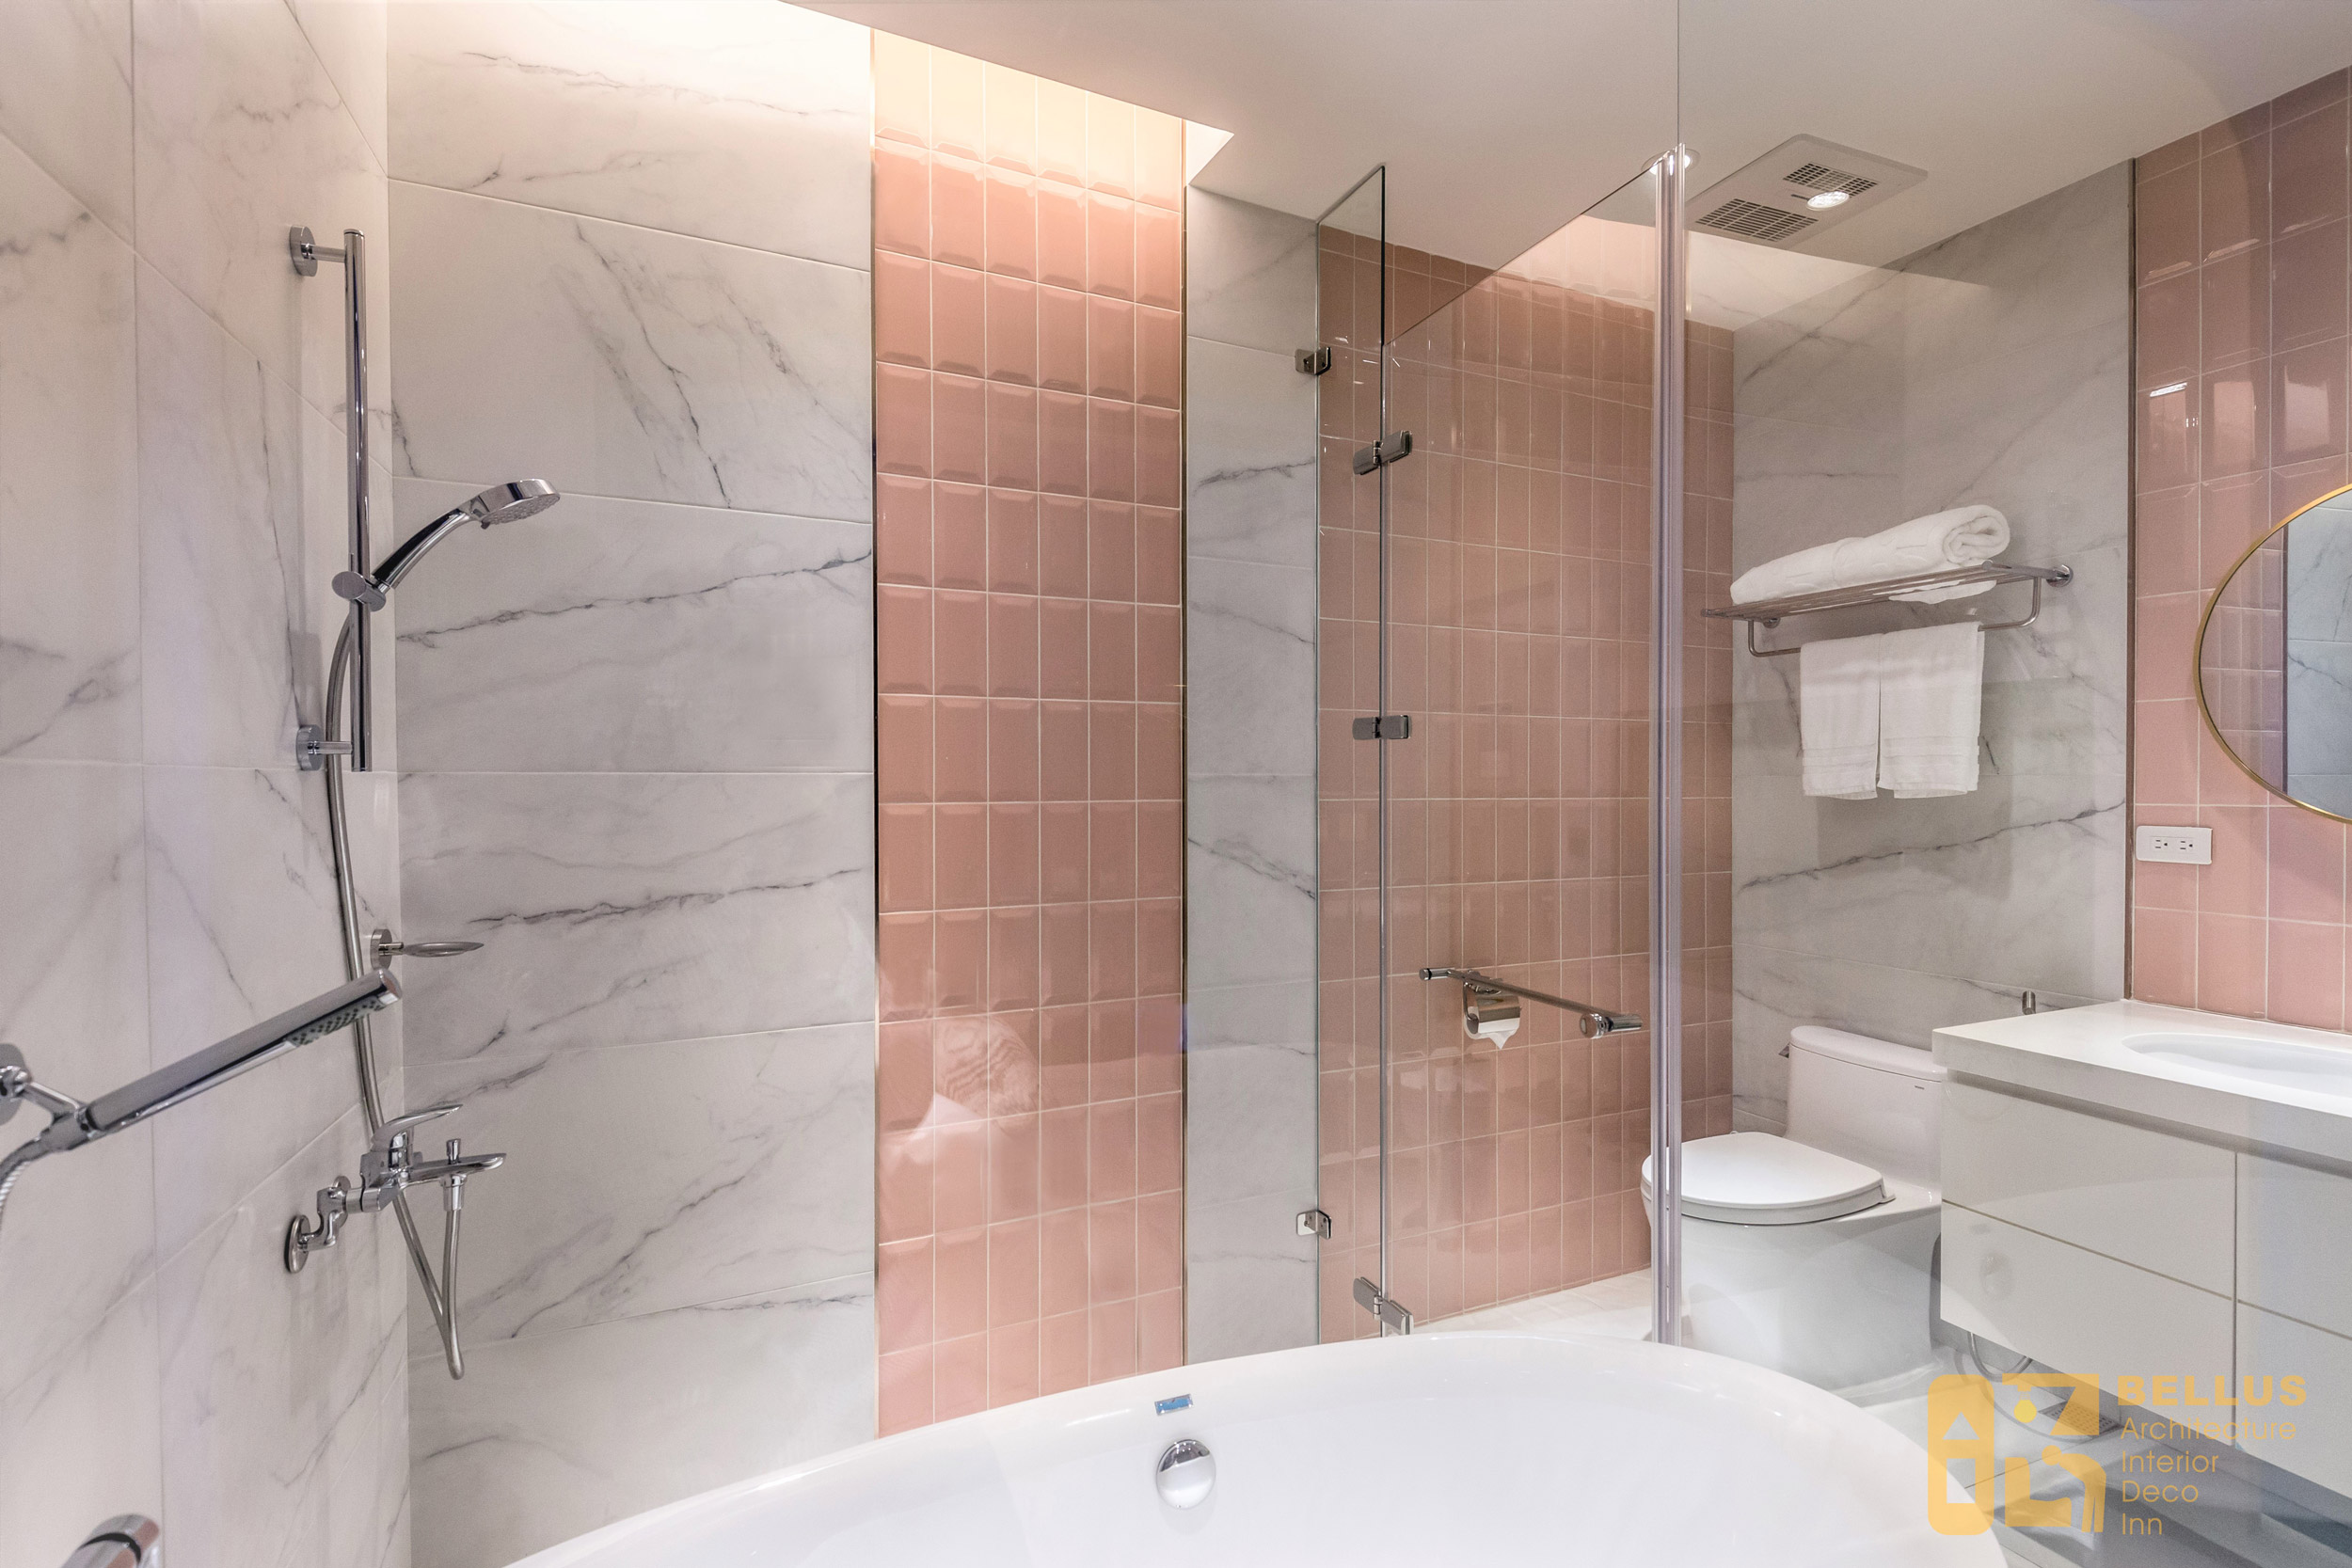 衛浴空間牆面使用粉色地鐵磚以及魚肚白大理石材，兩者搭配呈現活潑的空間氛圍